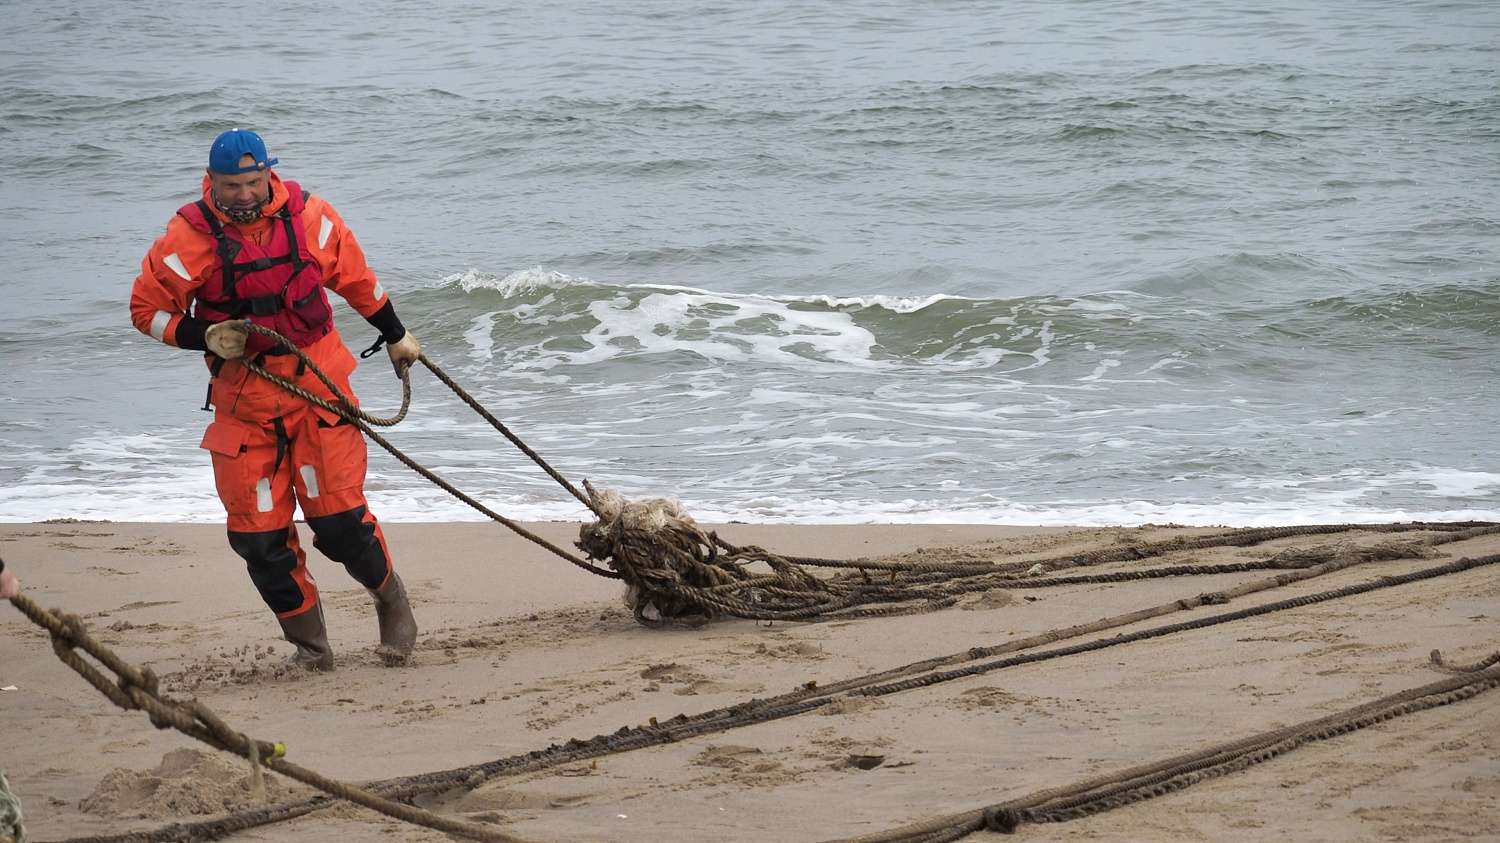 В районе залива Чайво побережье было очищено от брошенных рыболовных сетей, представляющих угрозу для серых китов